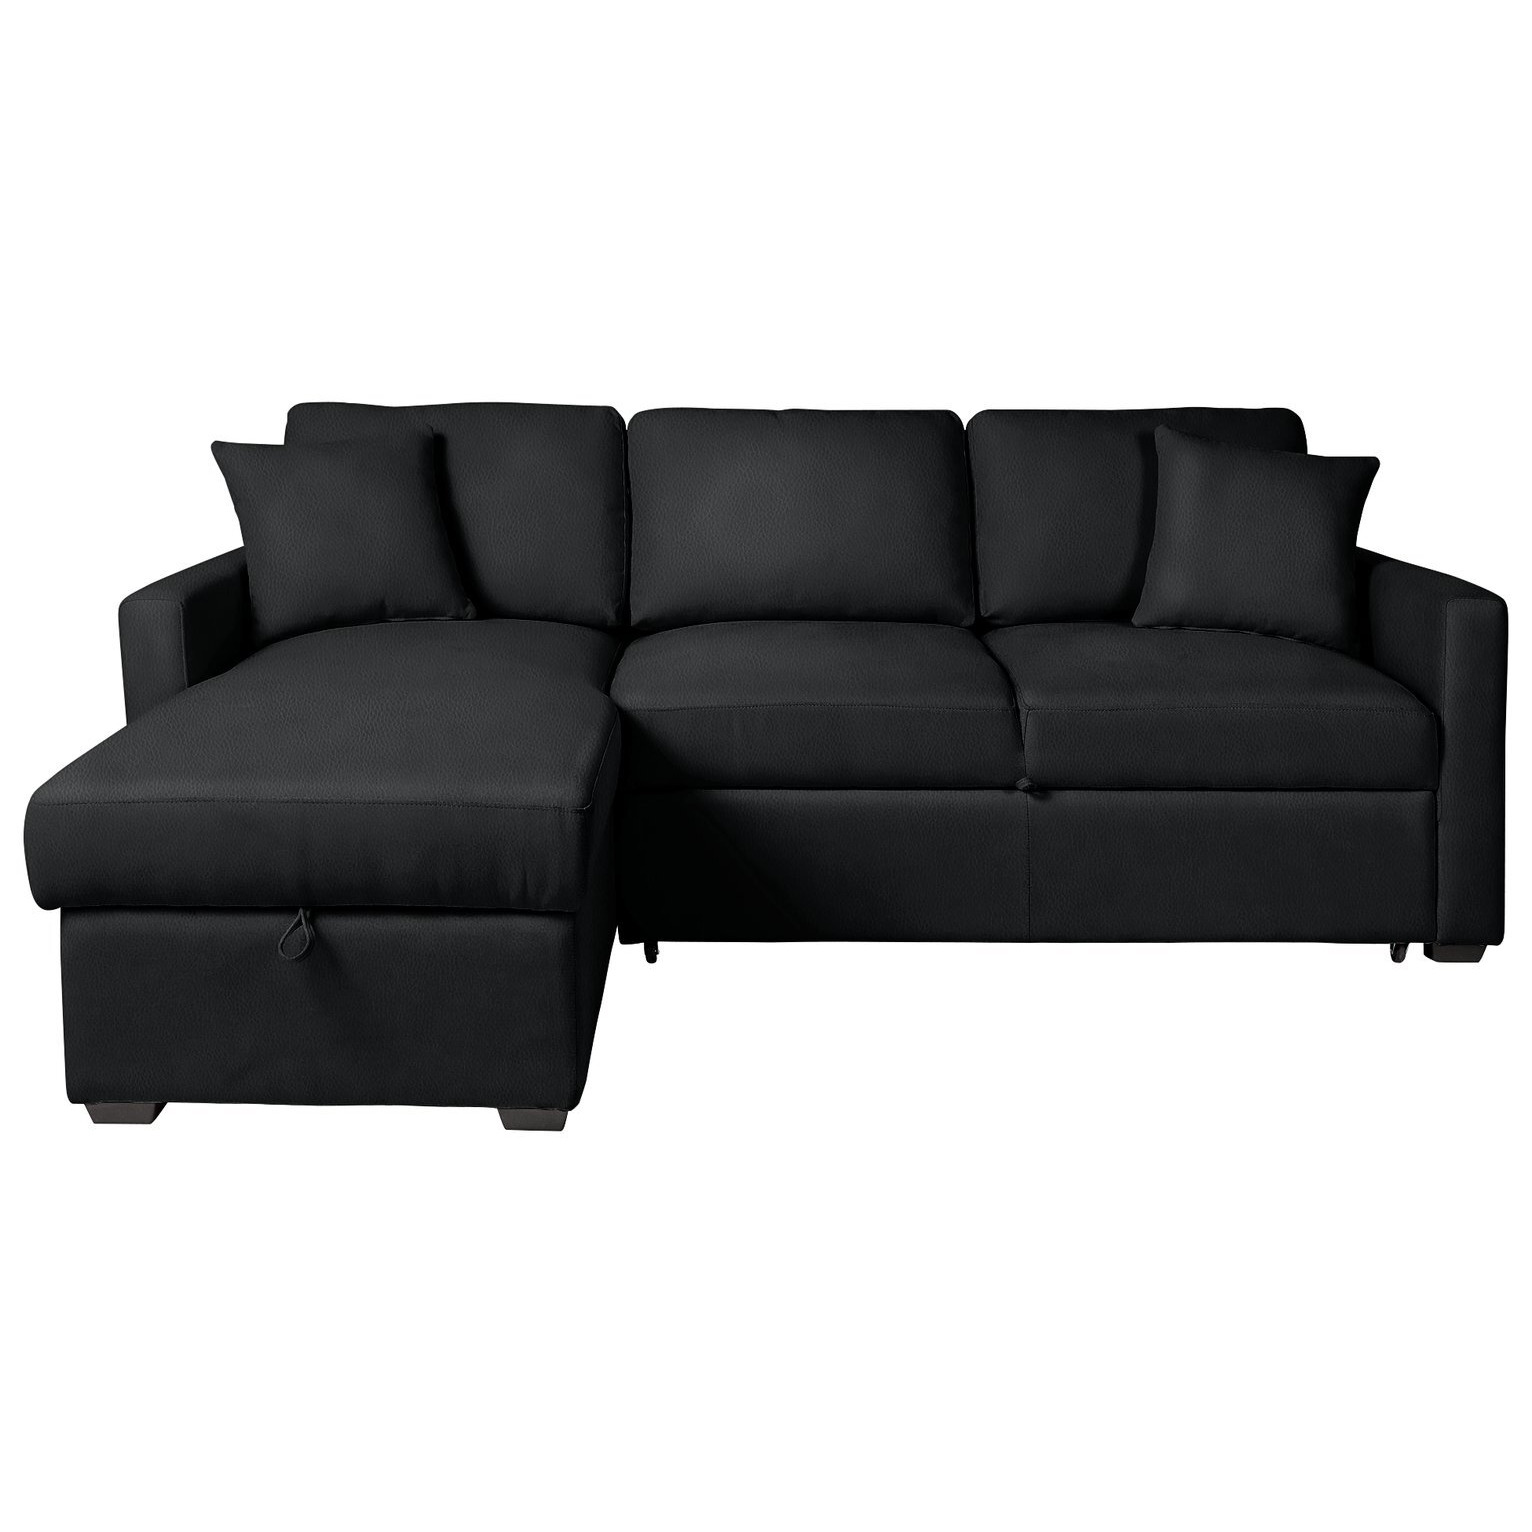 Habitat Reagan Left Hand Corner Chaise Sofa Bed - Black - image 1